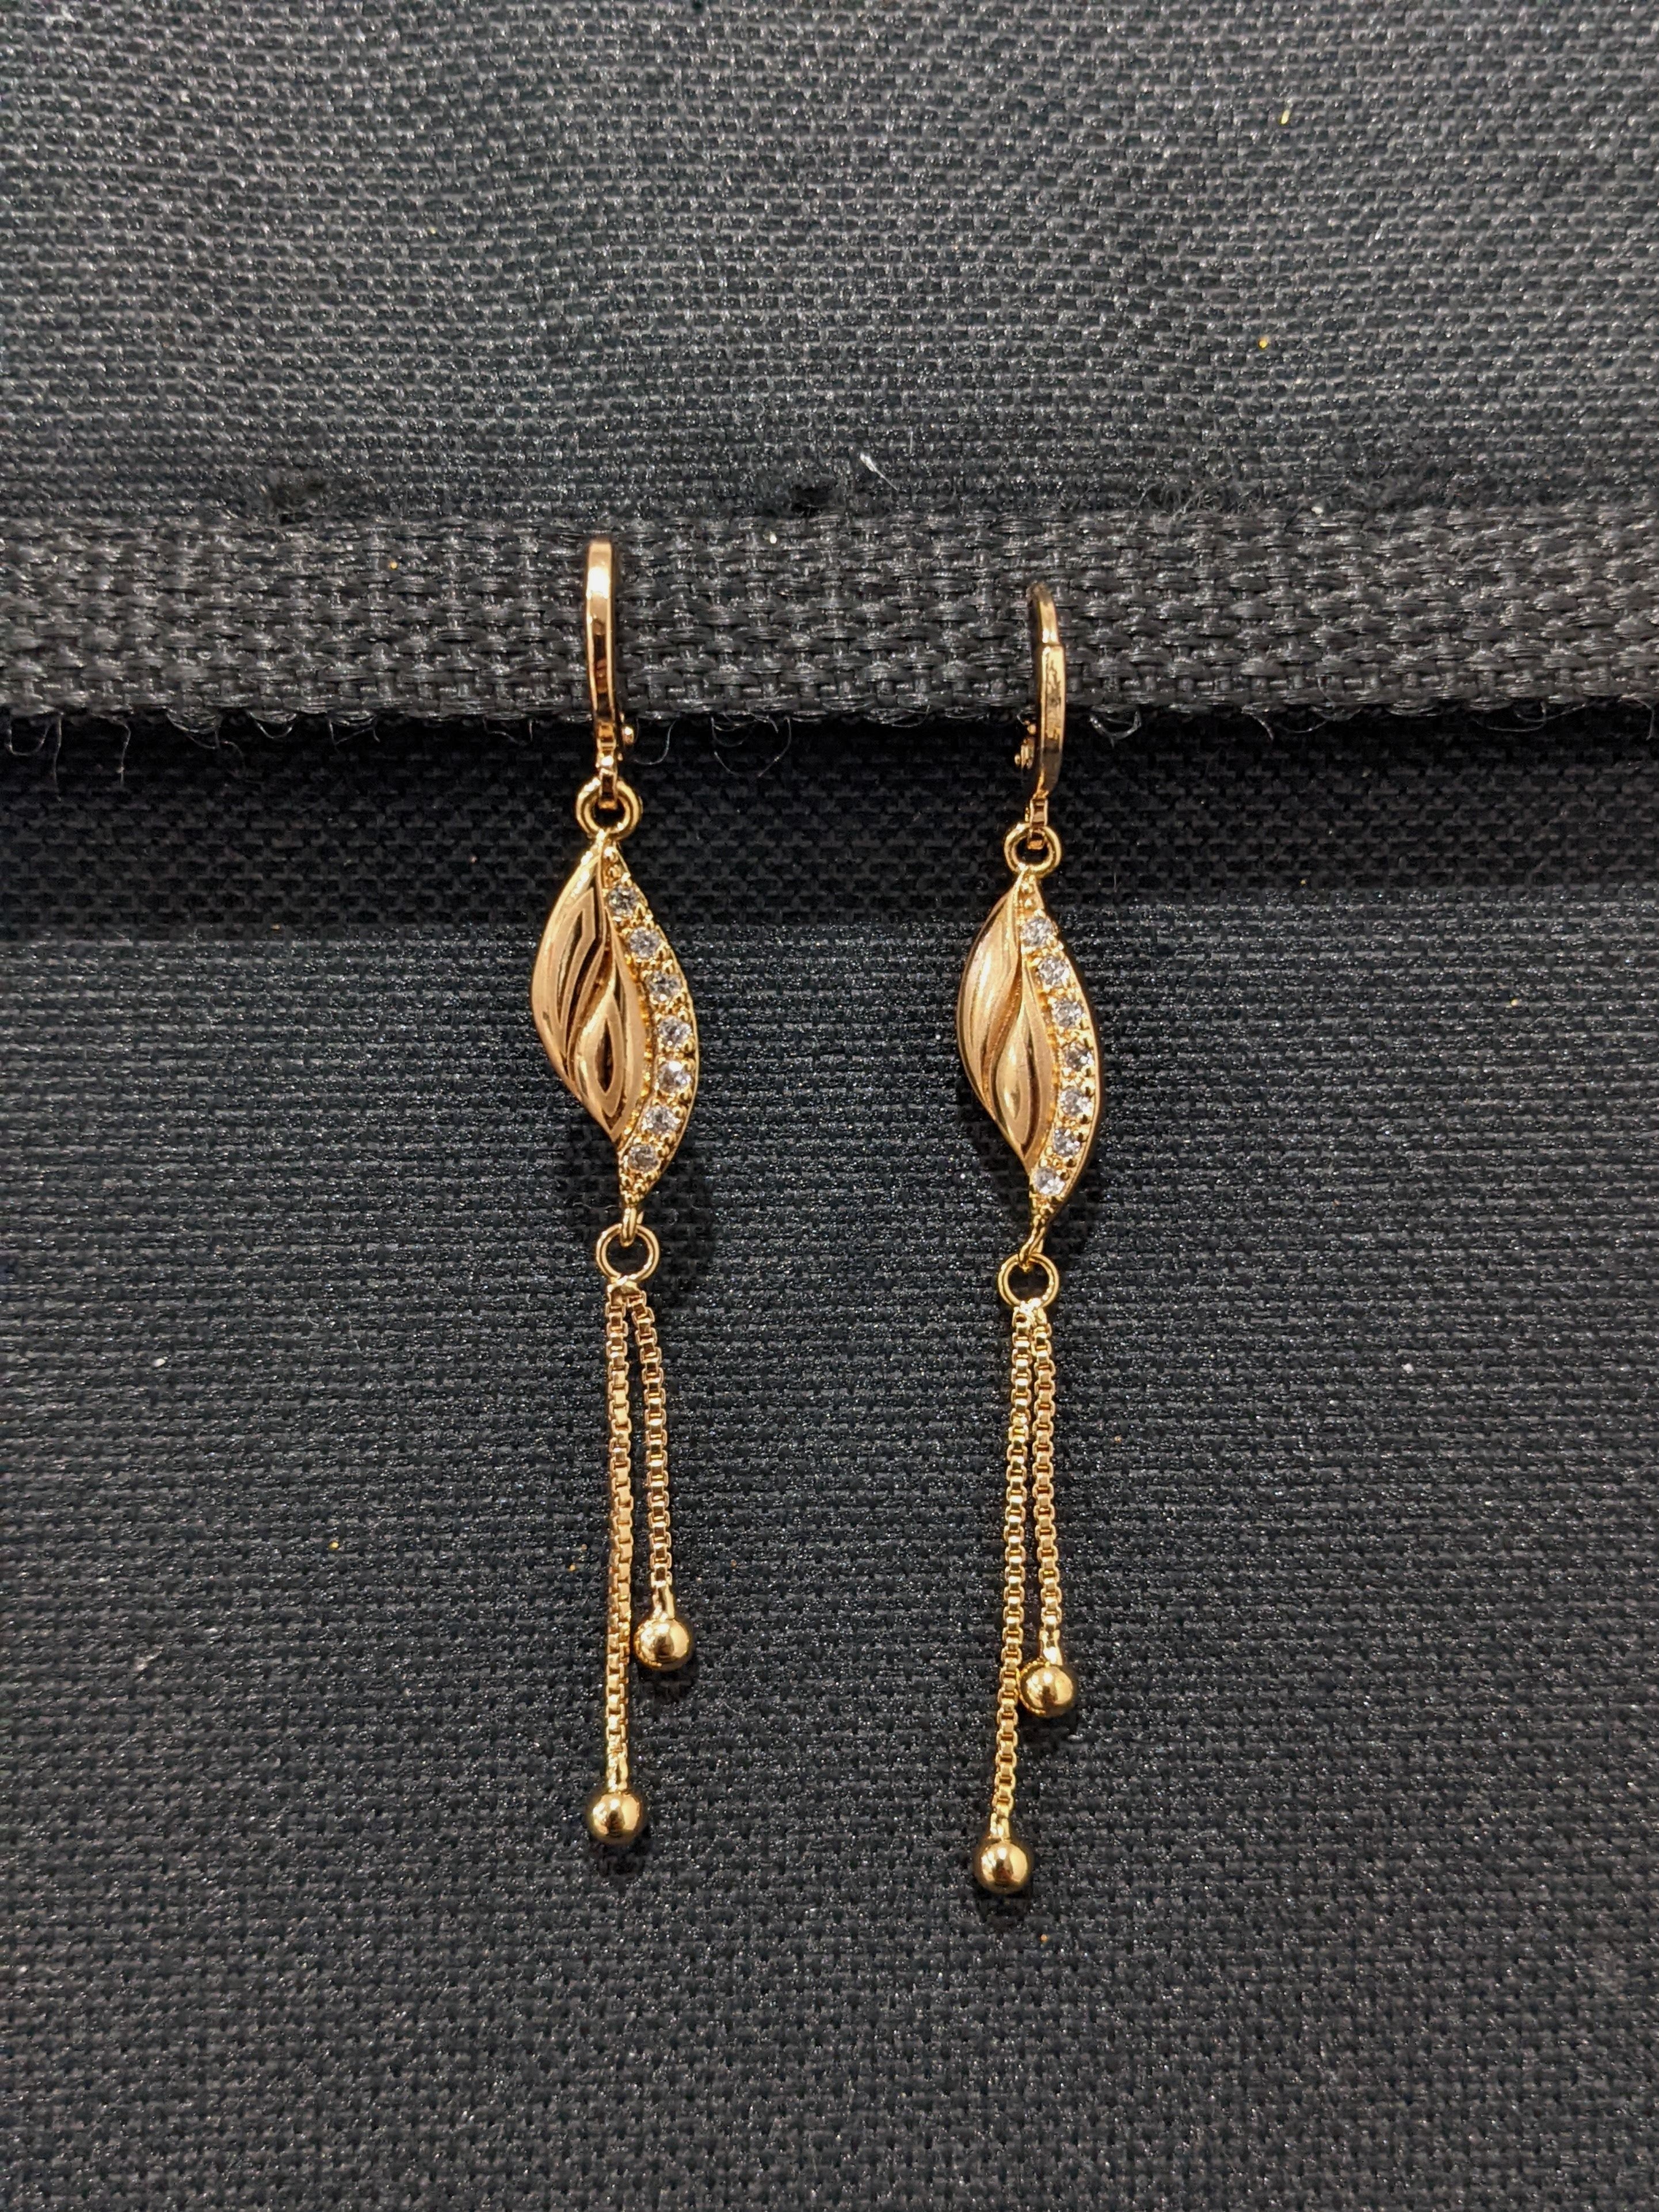 Large Gold Hoop Earrings Women | Ear Rings | Jewelry - Ear Gold Plated  Hoops Big Round - Aliexpress